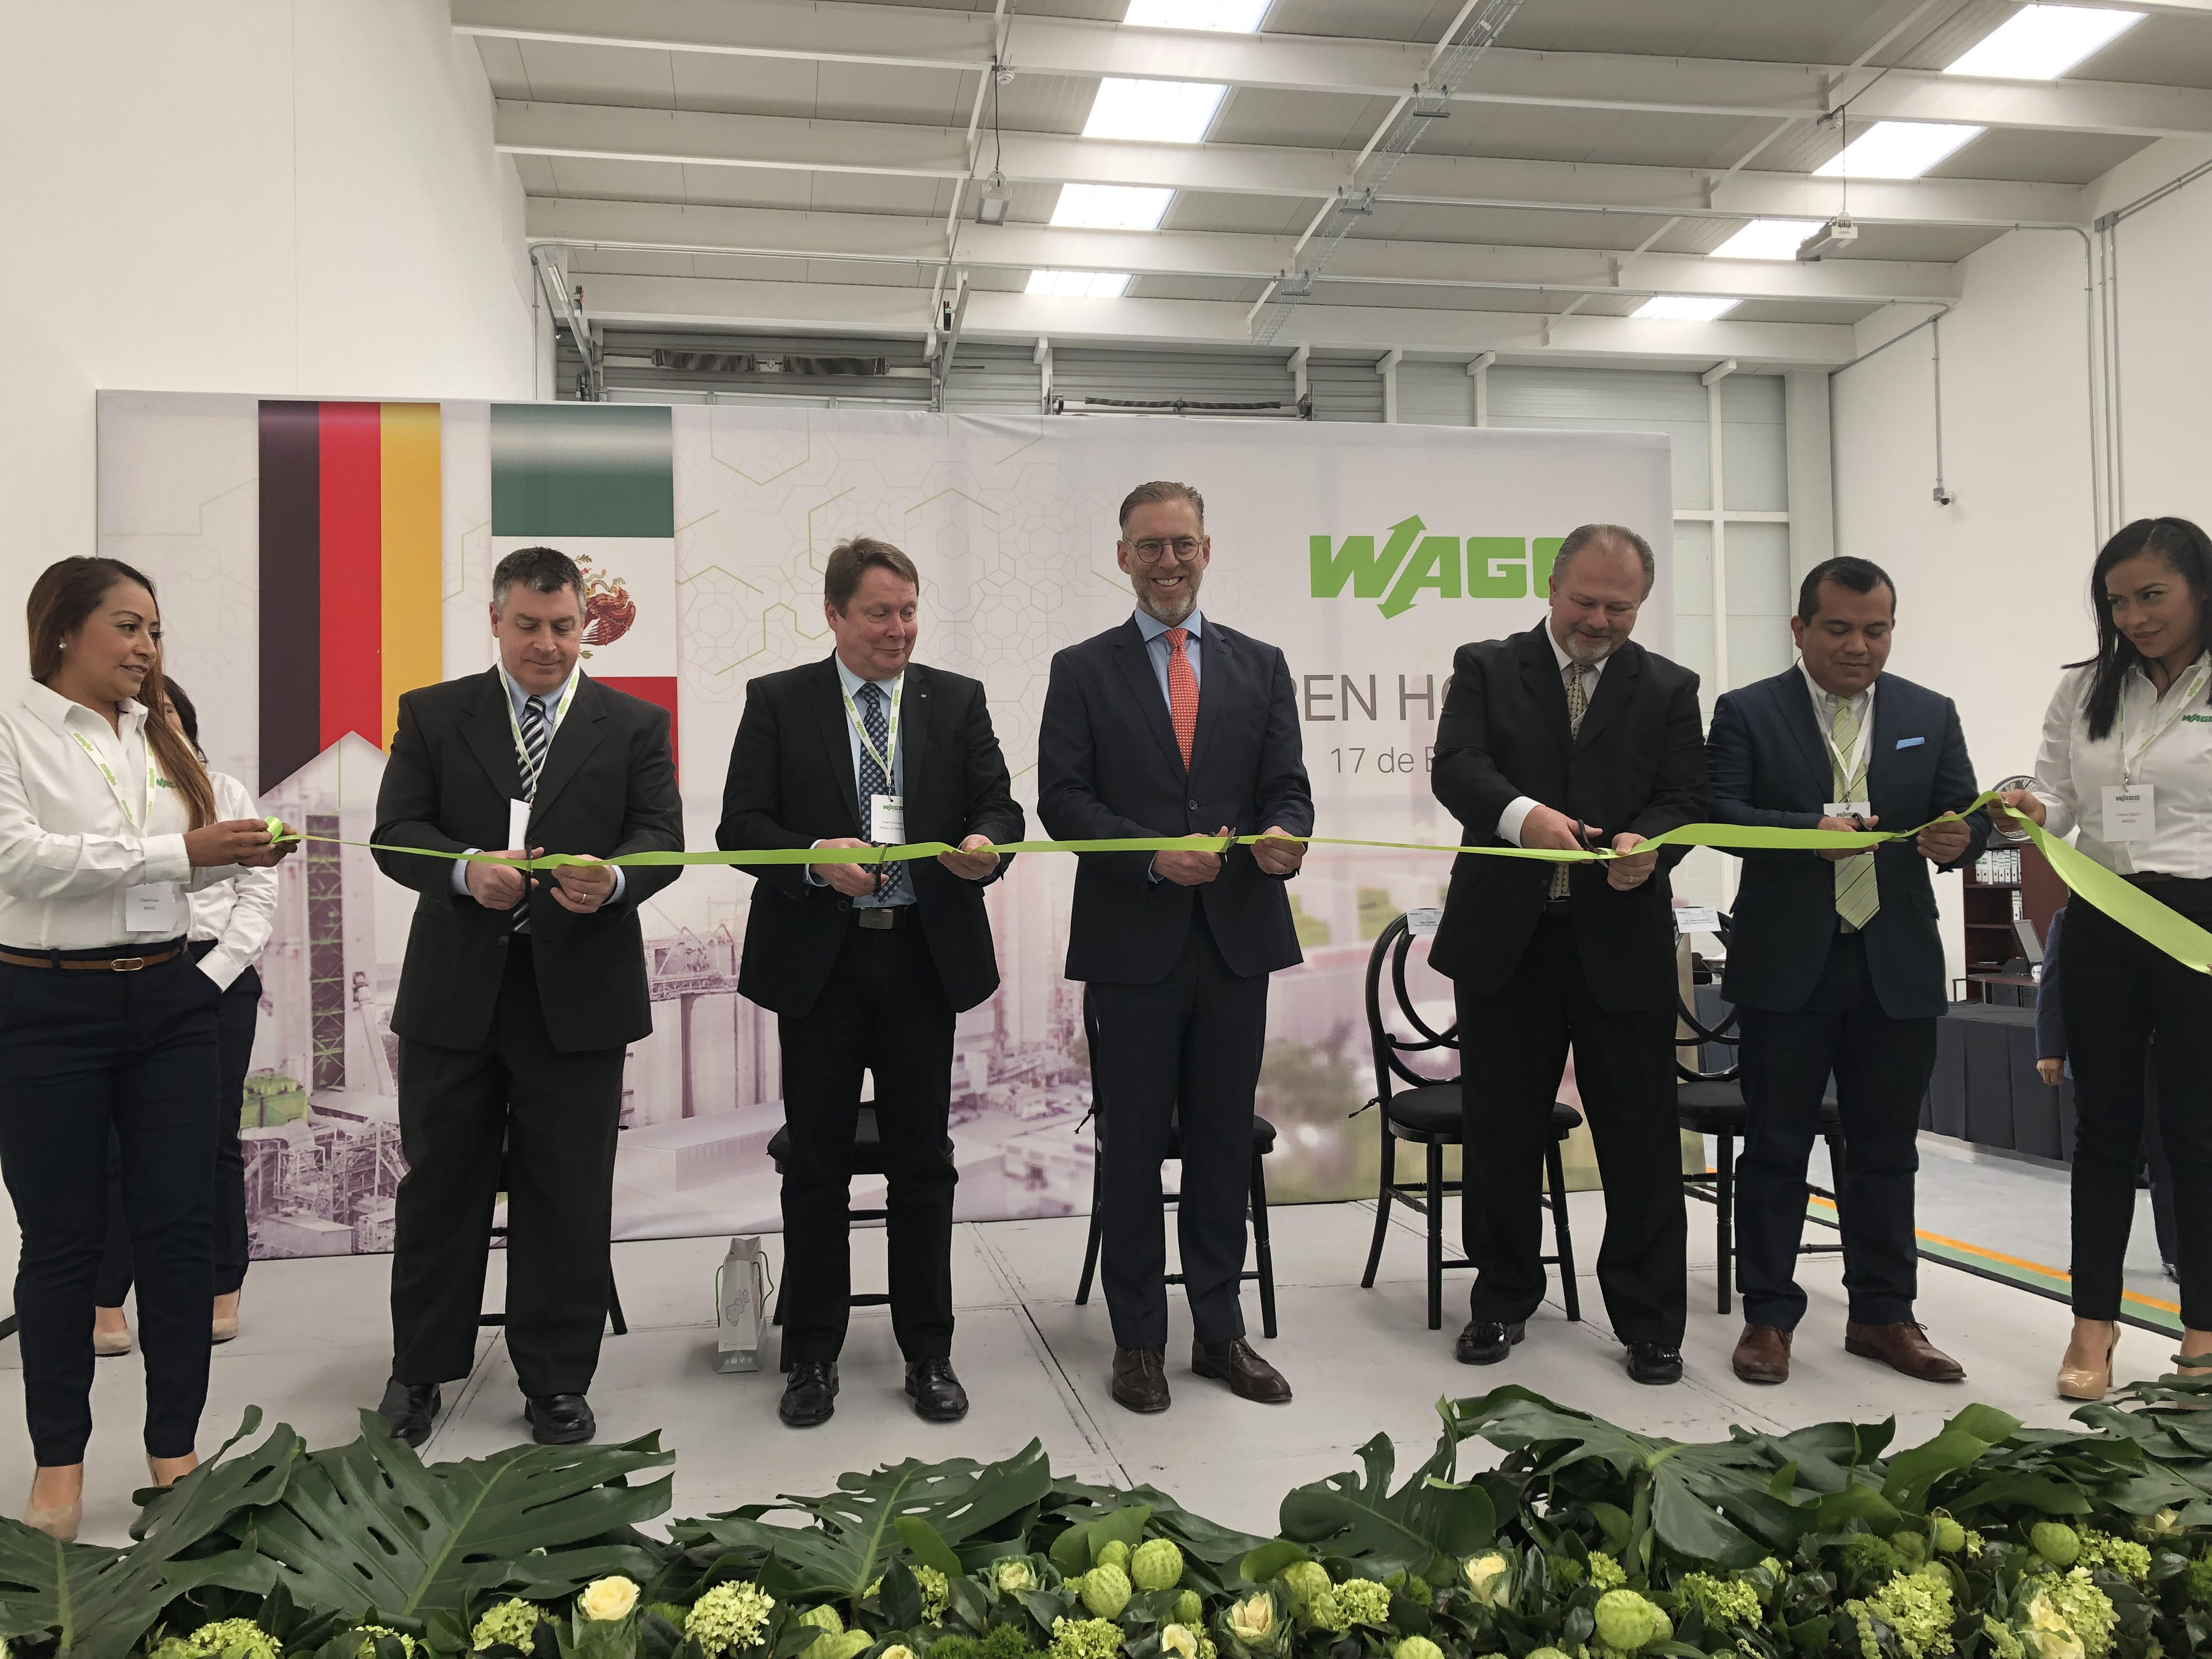  Empresa alemana Wago inaugura oficinas en Querétaro